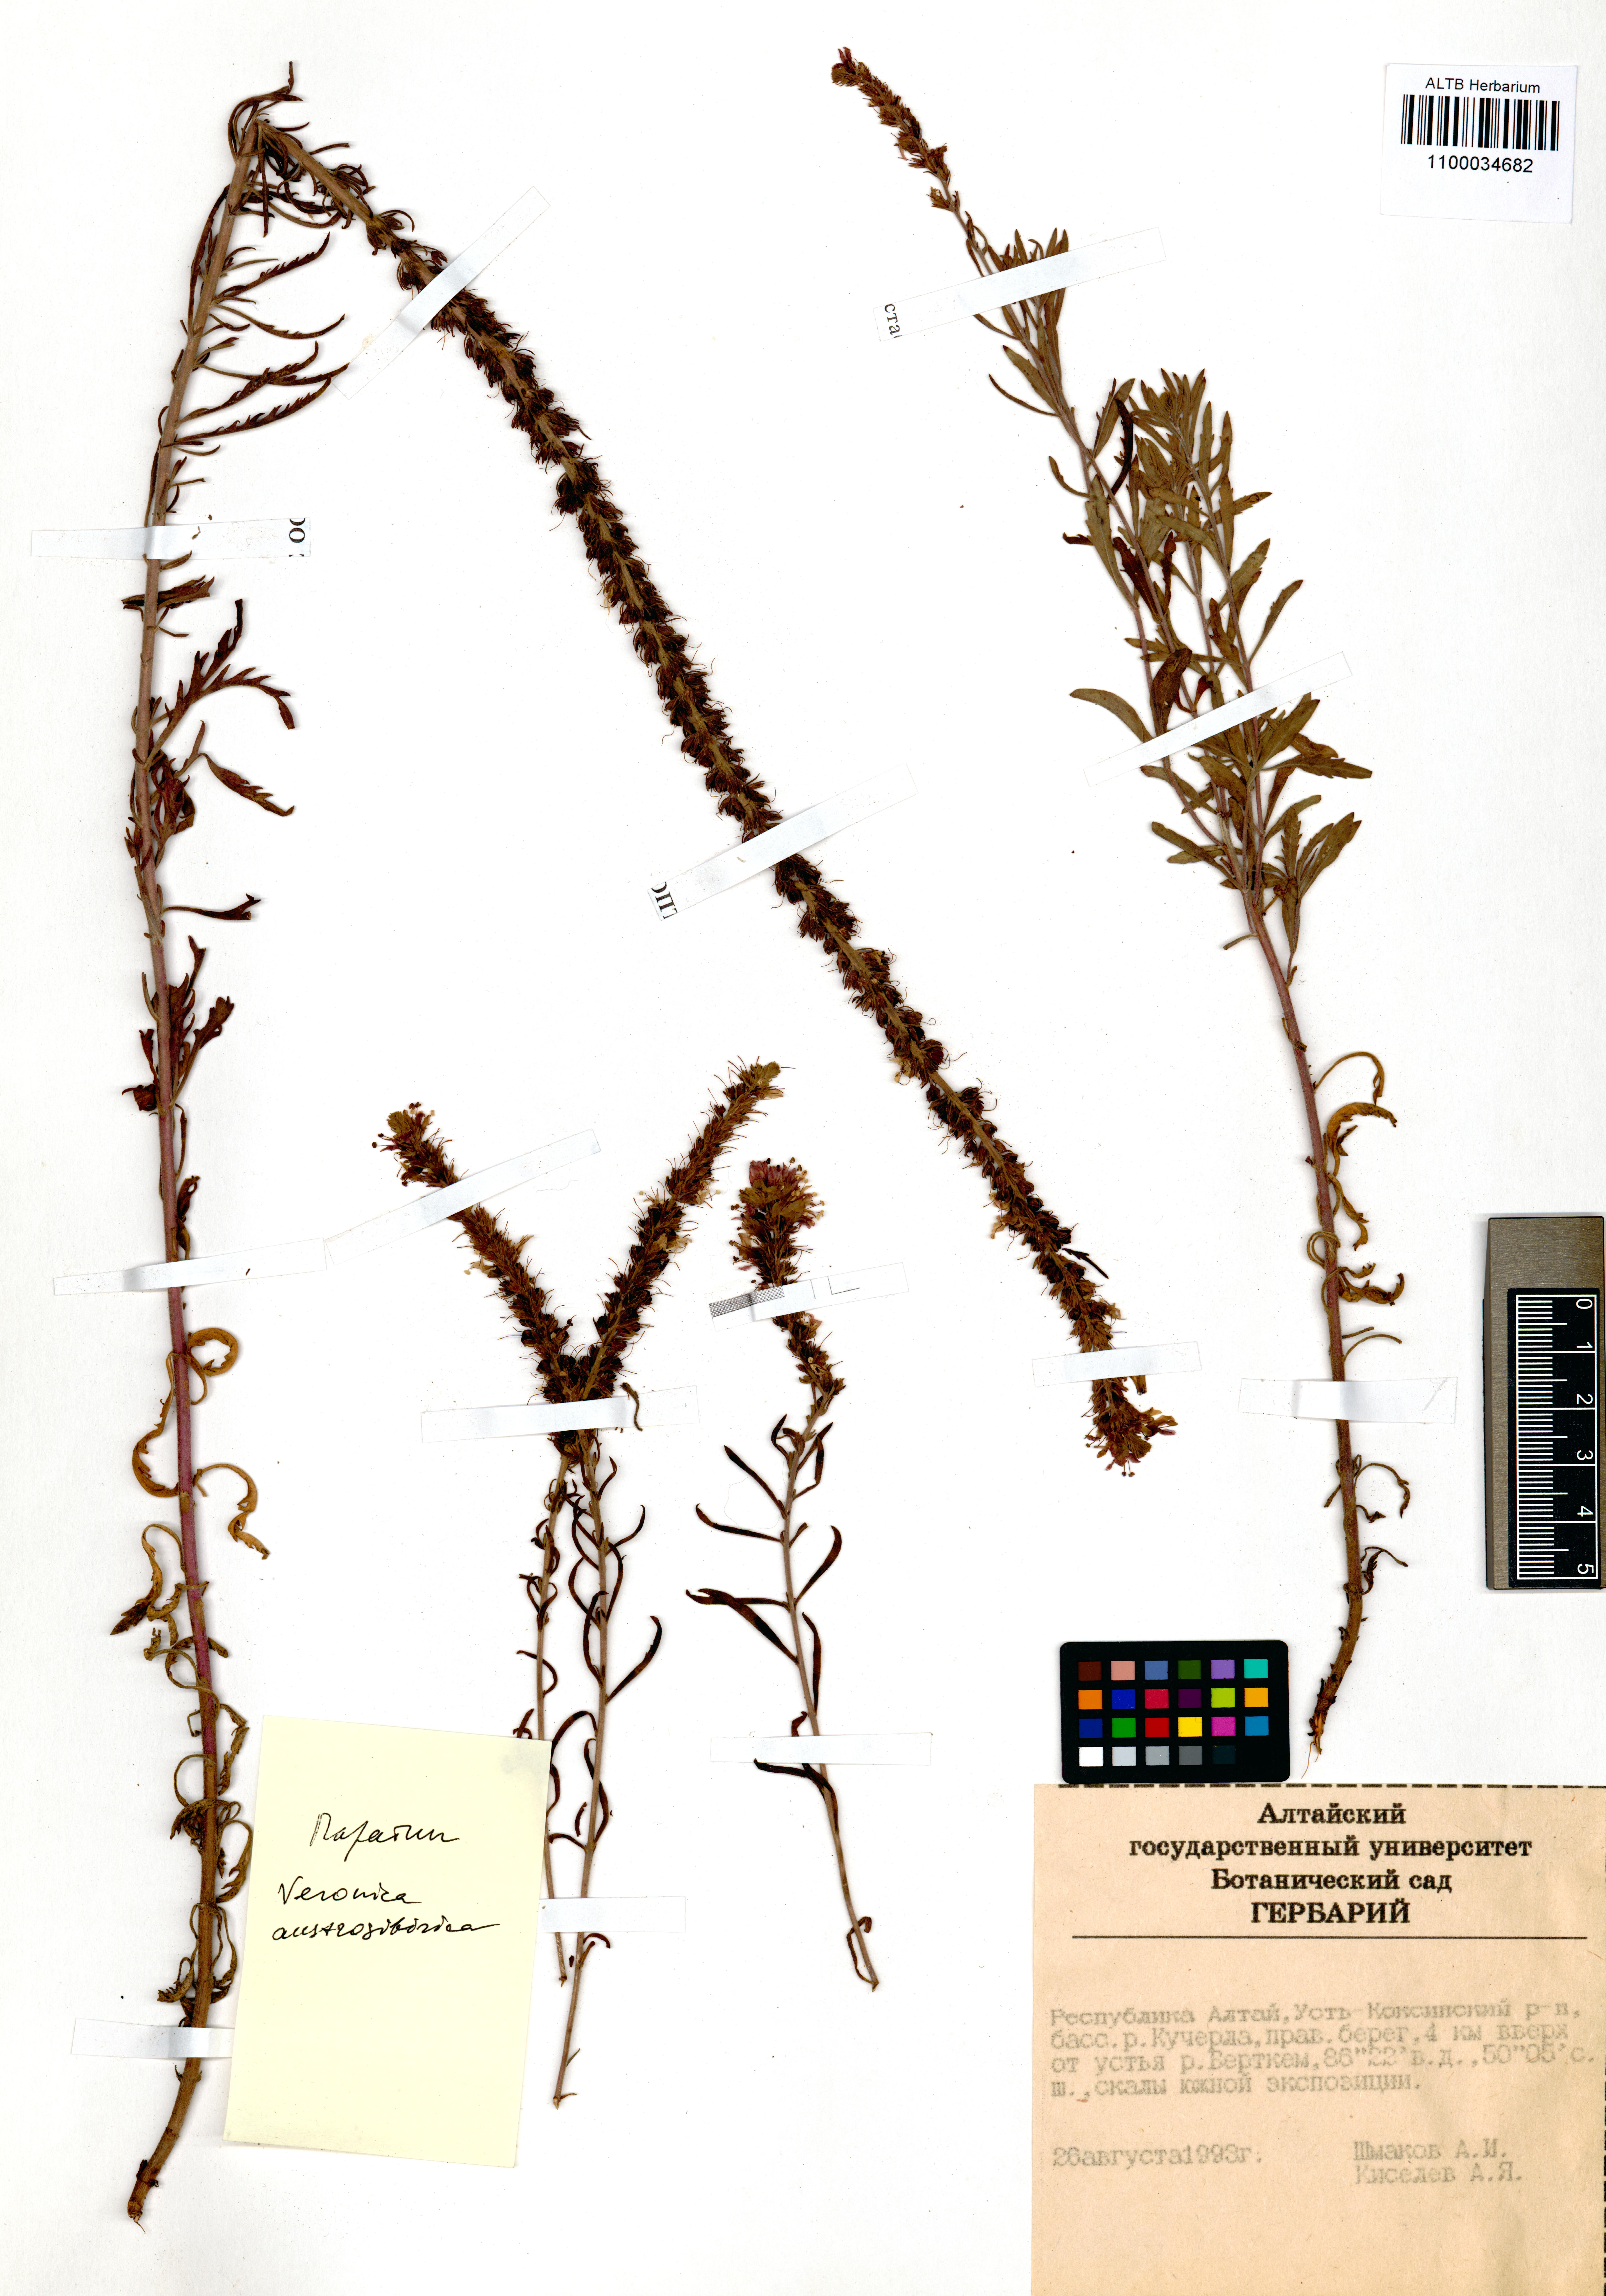 Plantaginaceae,Veronica austrosibirica Kosachev